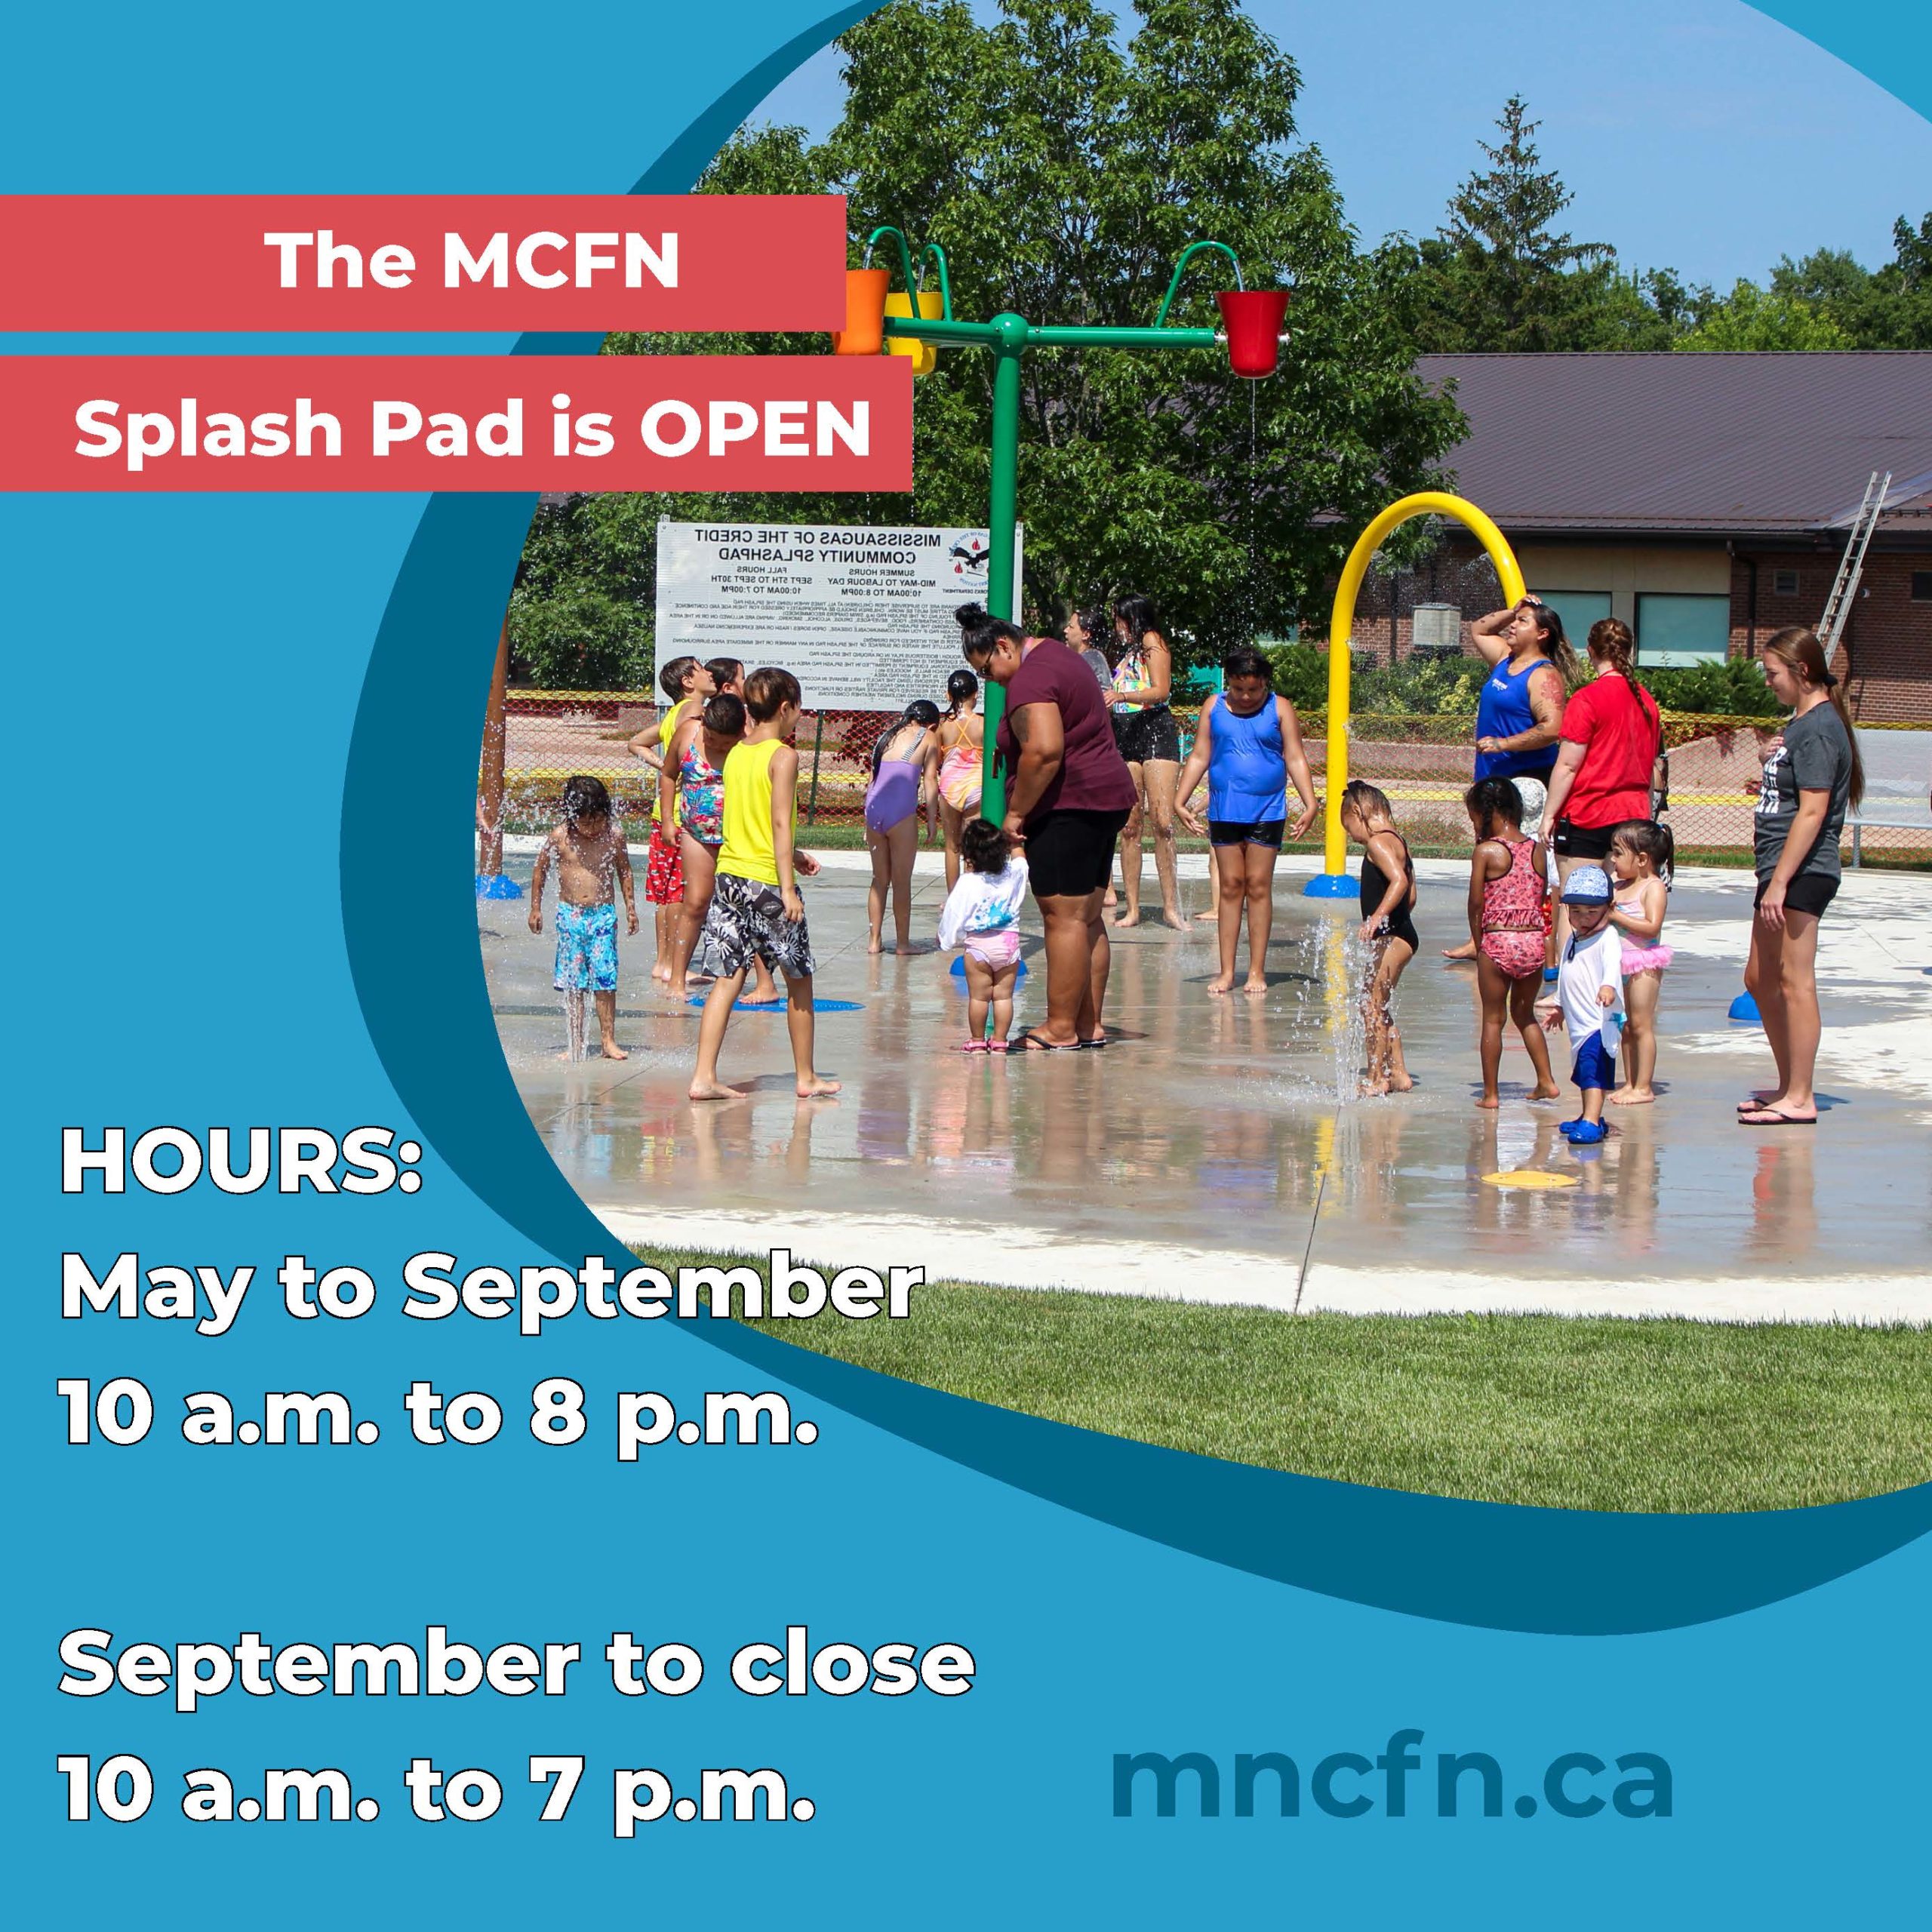 MCFN Splash Pad is open